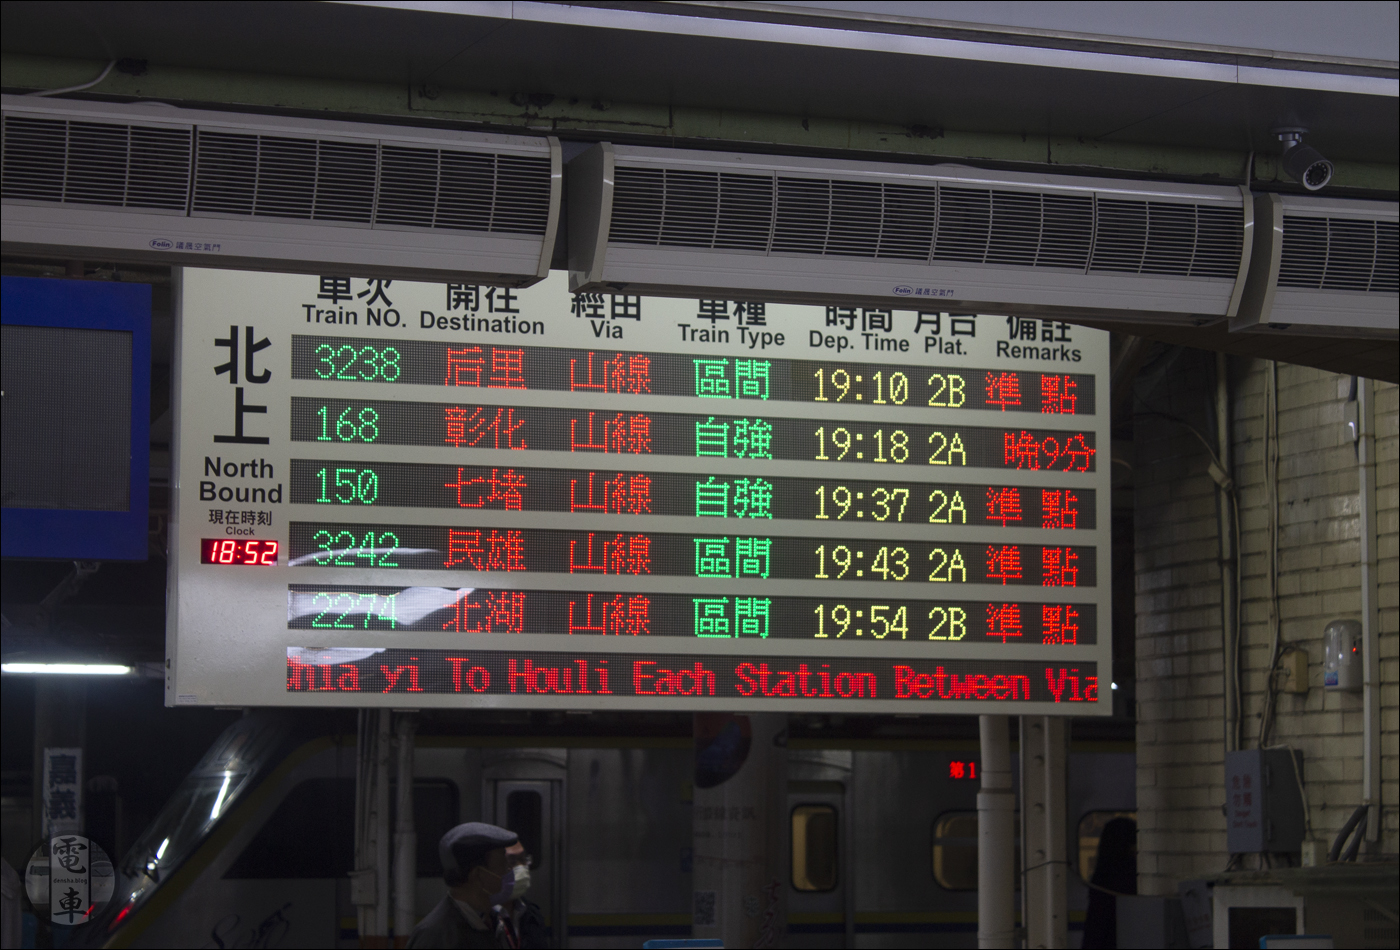 A Chiayi állomásról induló járatok közül számunkra a 168-as számú, Changhuáig közlekedő vonat az érdekes, mely egyedüliként közel 10 percnyi késést is összehozott.